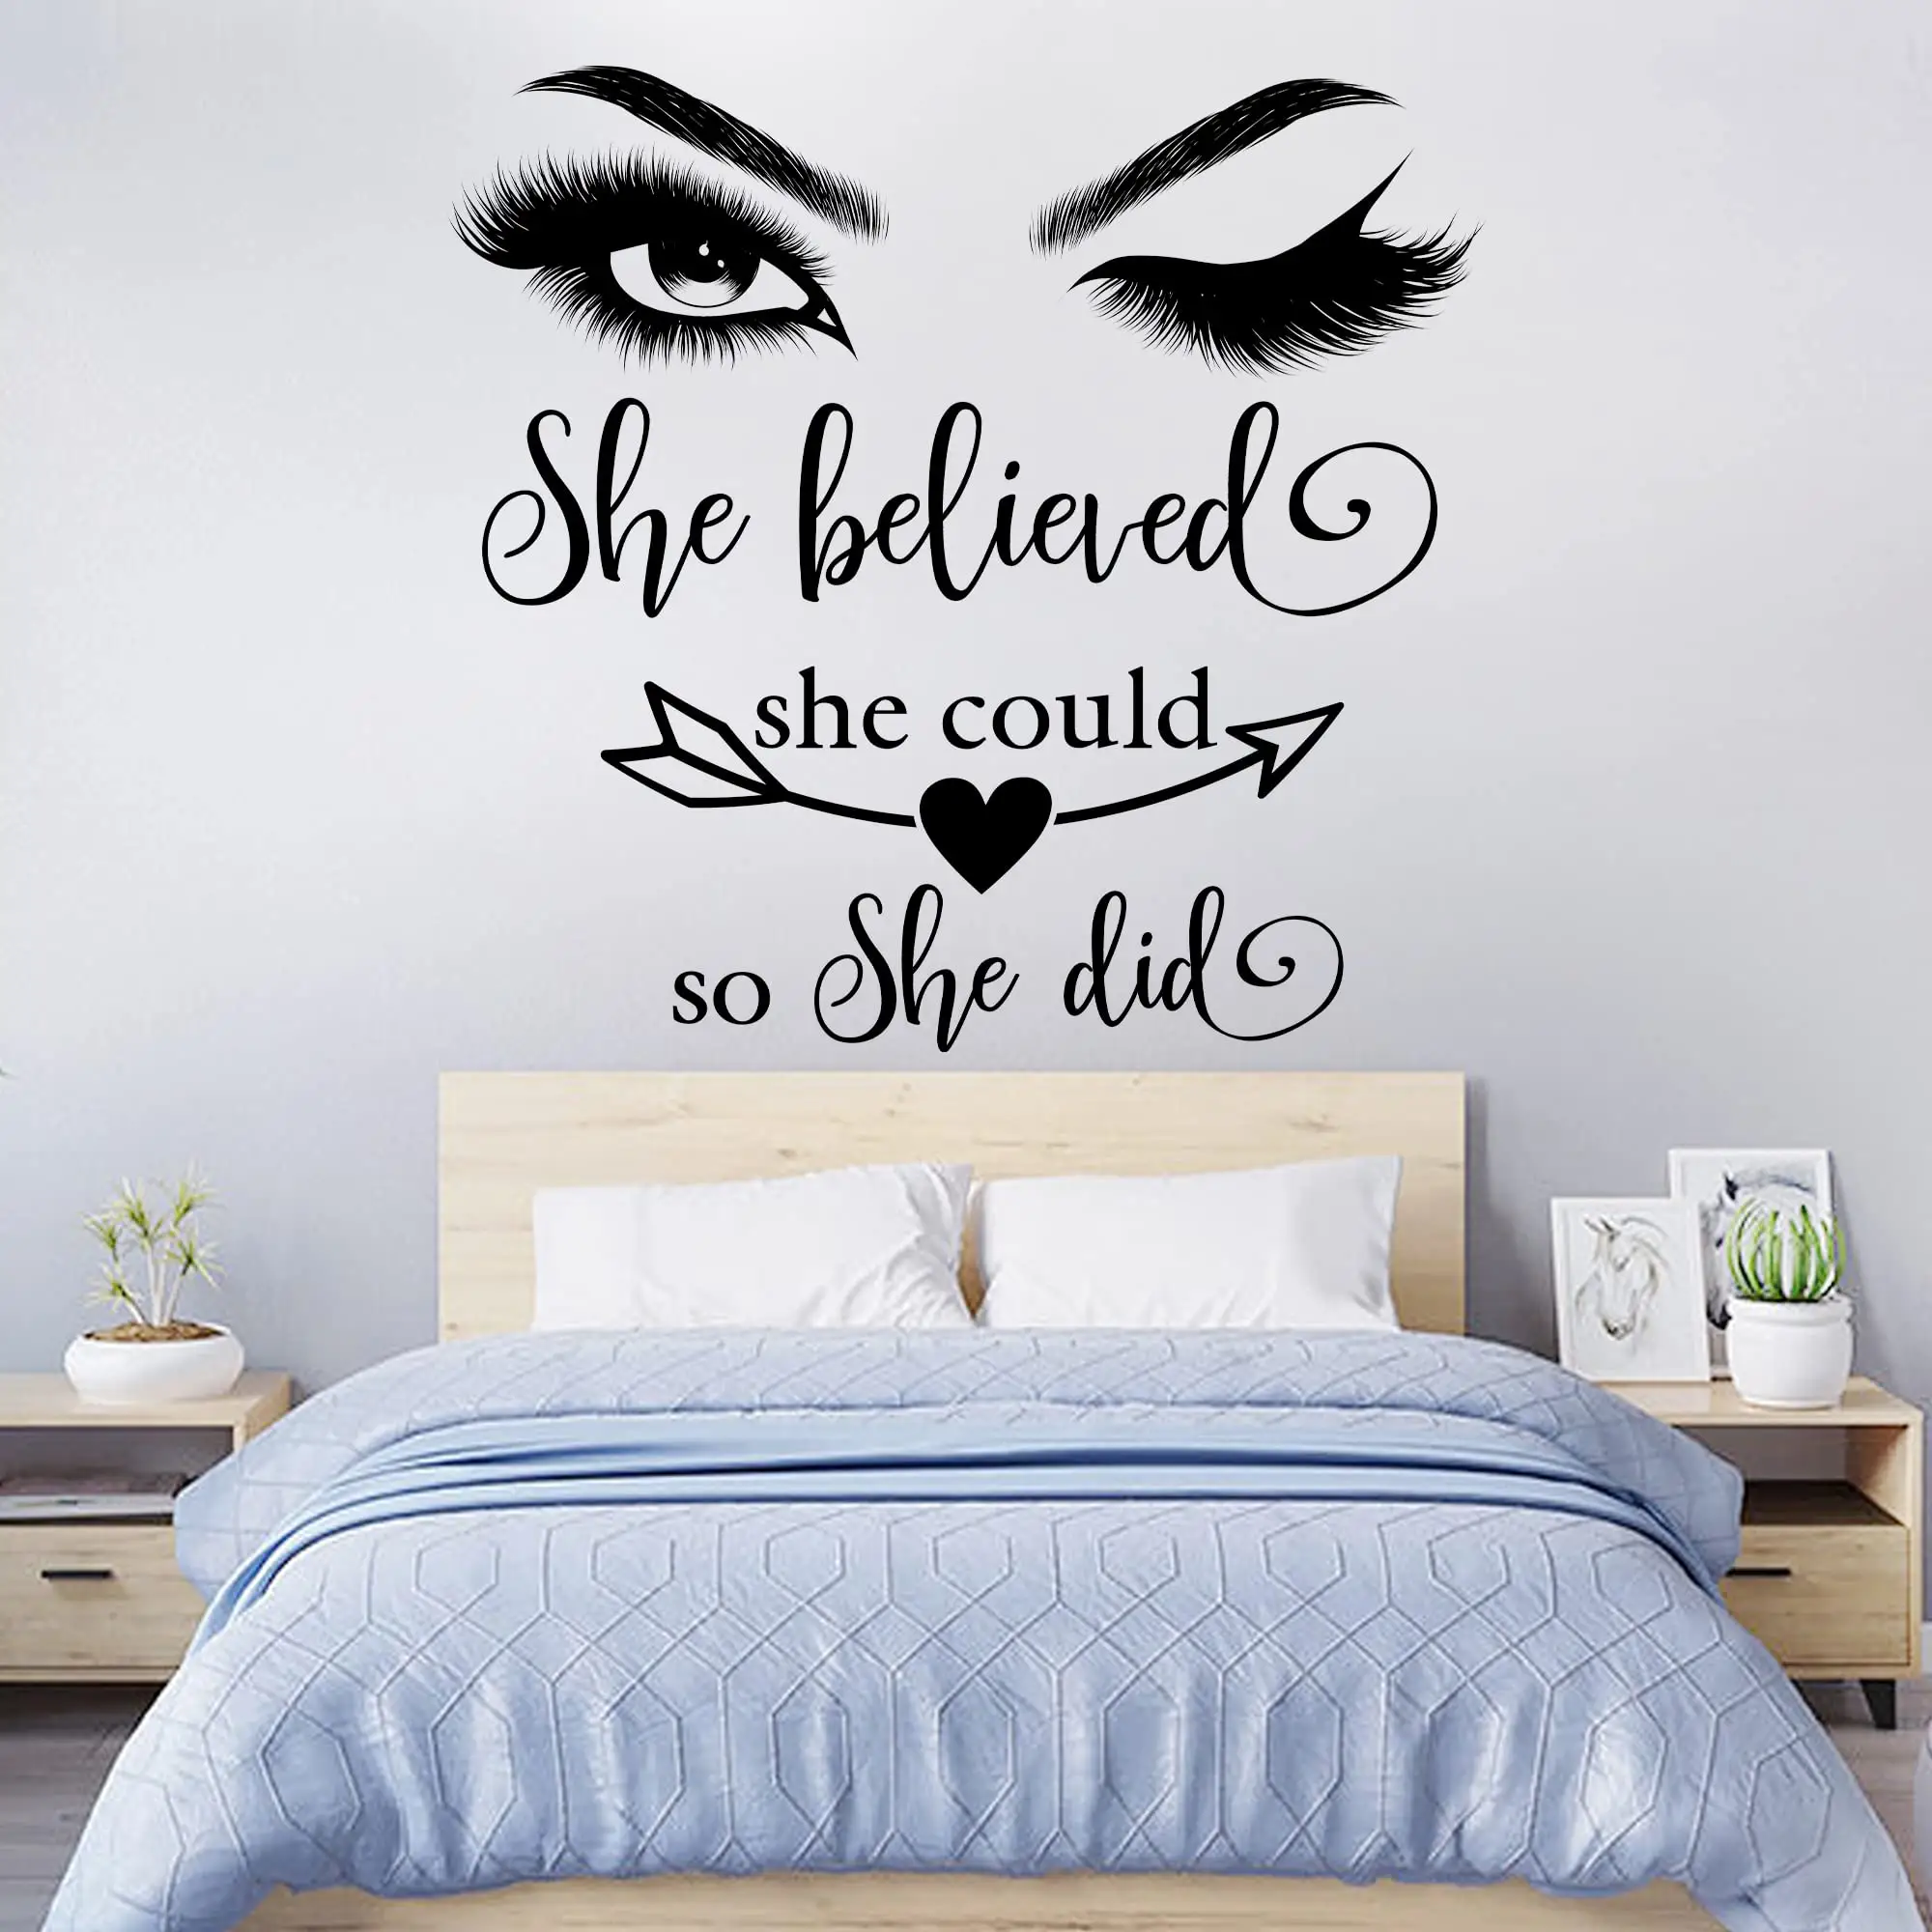 Motivierende Sprüche für Wand kunst Dekor Aufkleber Positive Wörter Buchstaben Wandt attoos für Frauen Mädchen Schlafzimmer Wohnzimmer Home